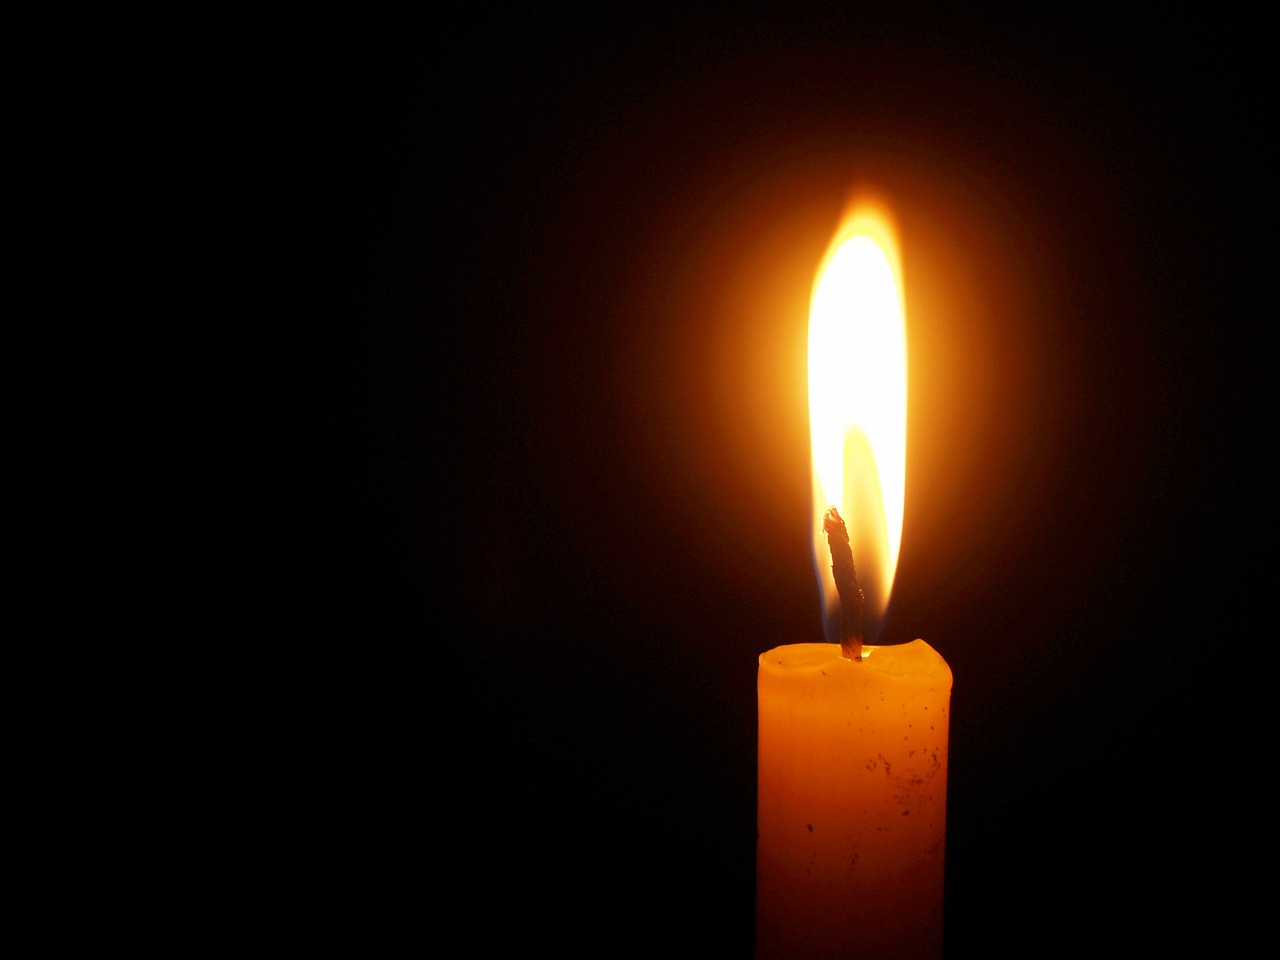 Έφυγε από την ζωή η Κωνσταντίνα Μπουκλά σε ηλικία 84 ετών- Η κηδεία θα τελεστεί την Τρίτη 8 Νοεμβρίου